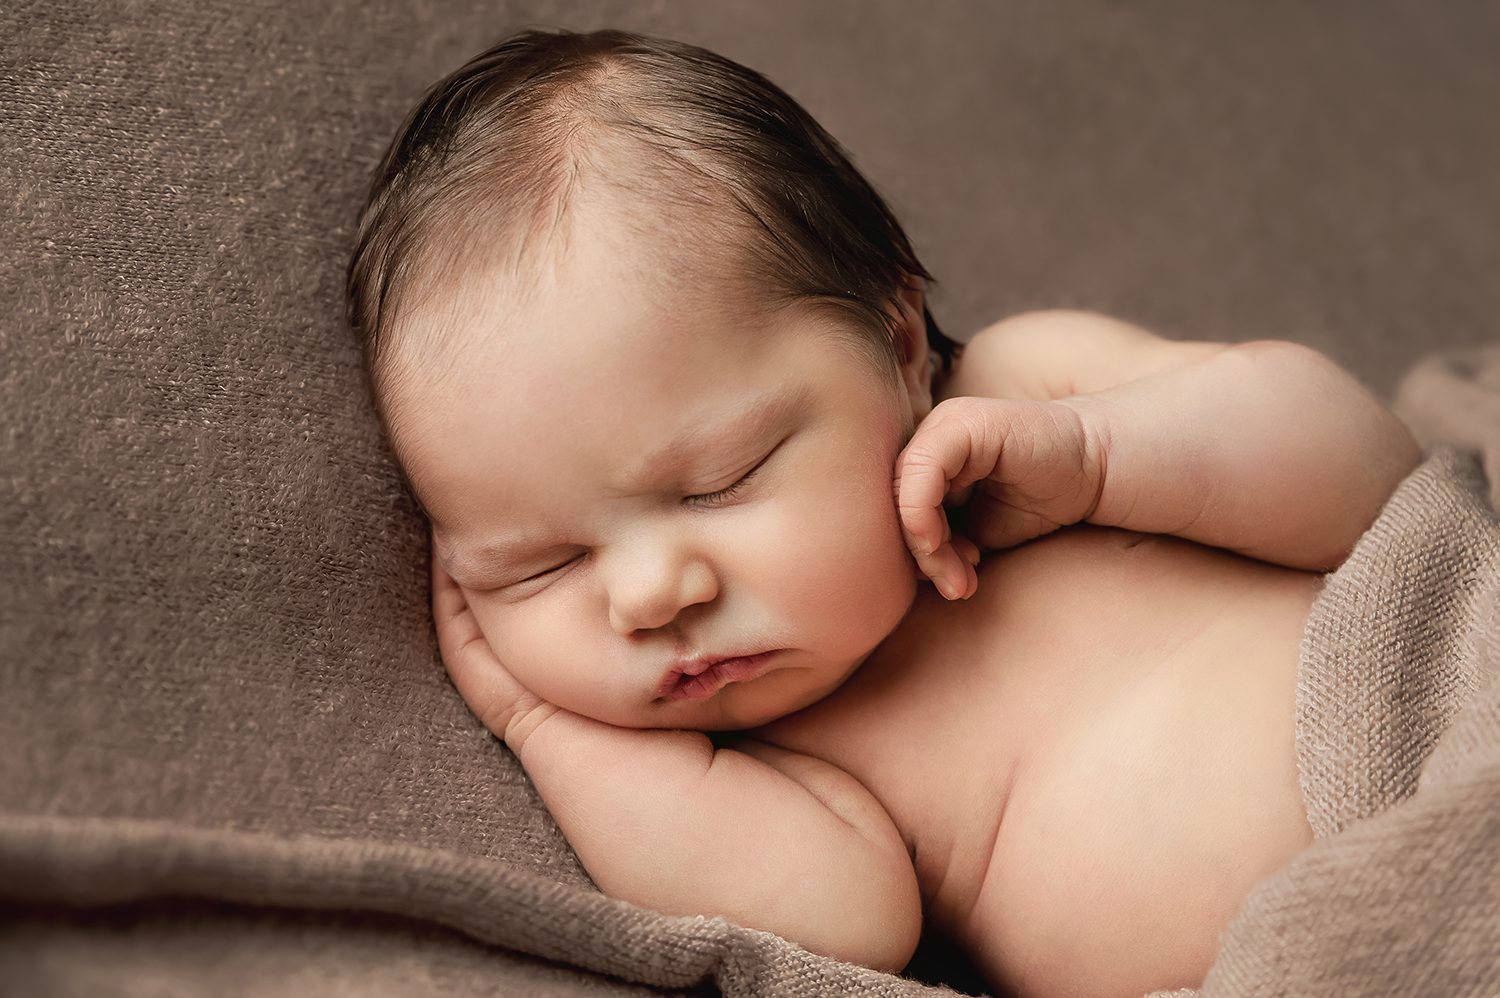 perth newborn photographer dundee baby